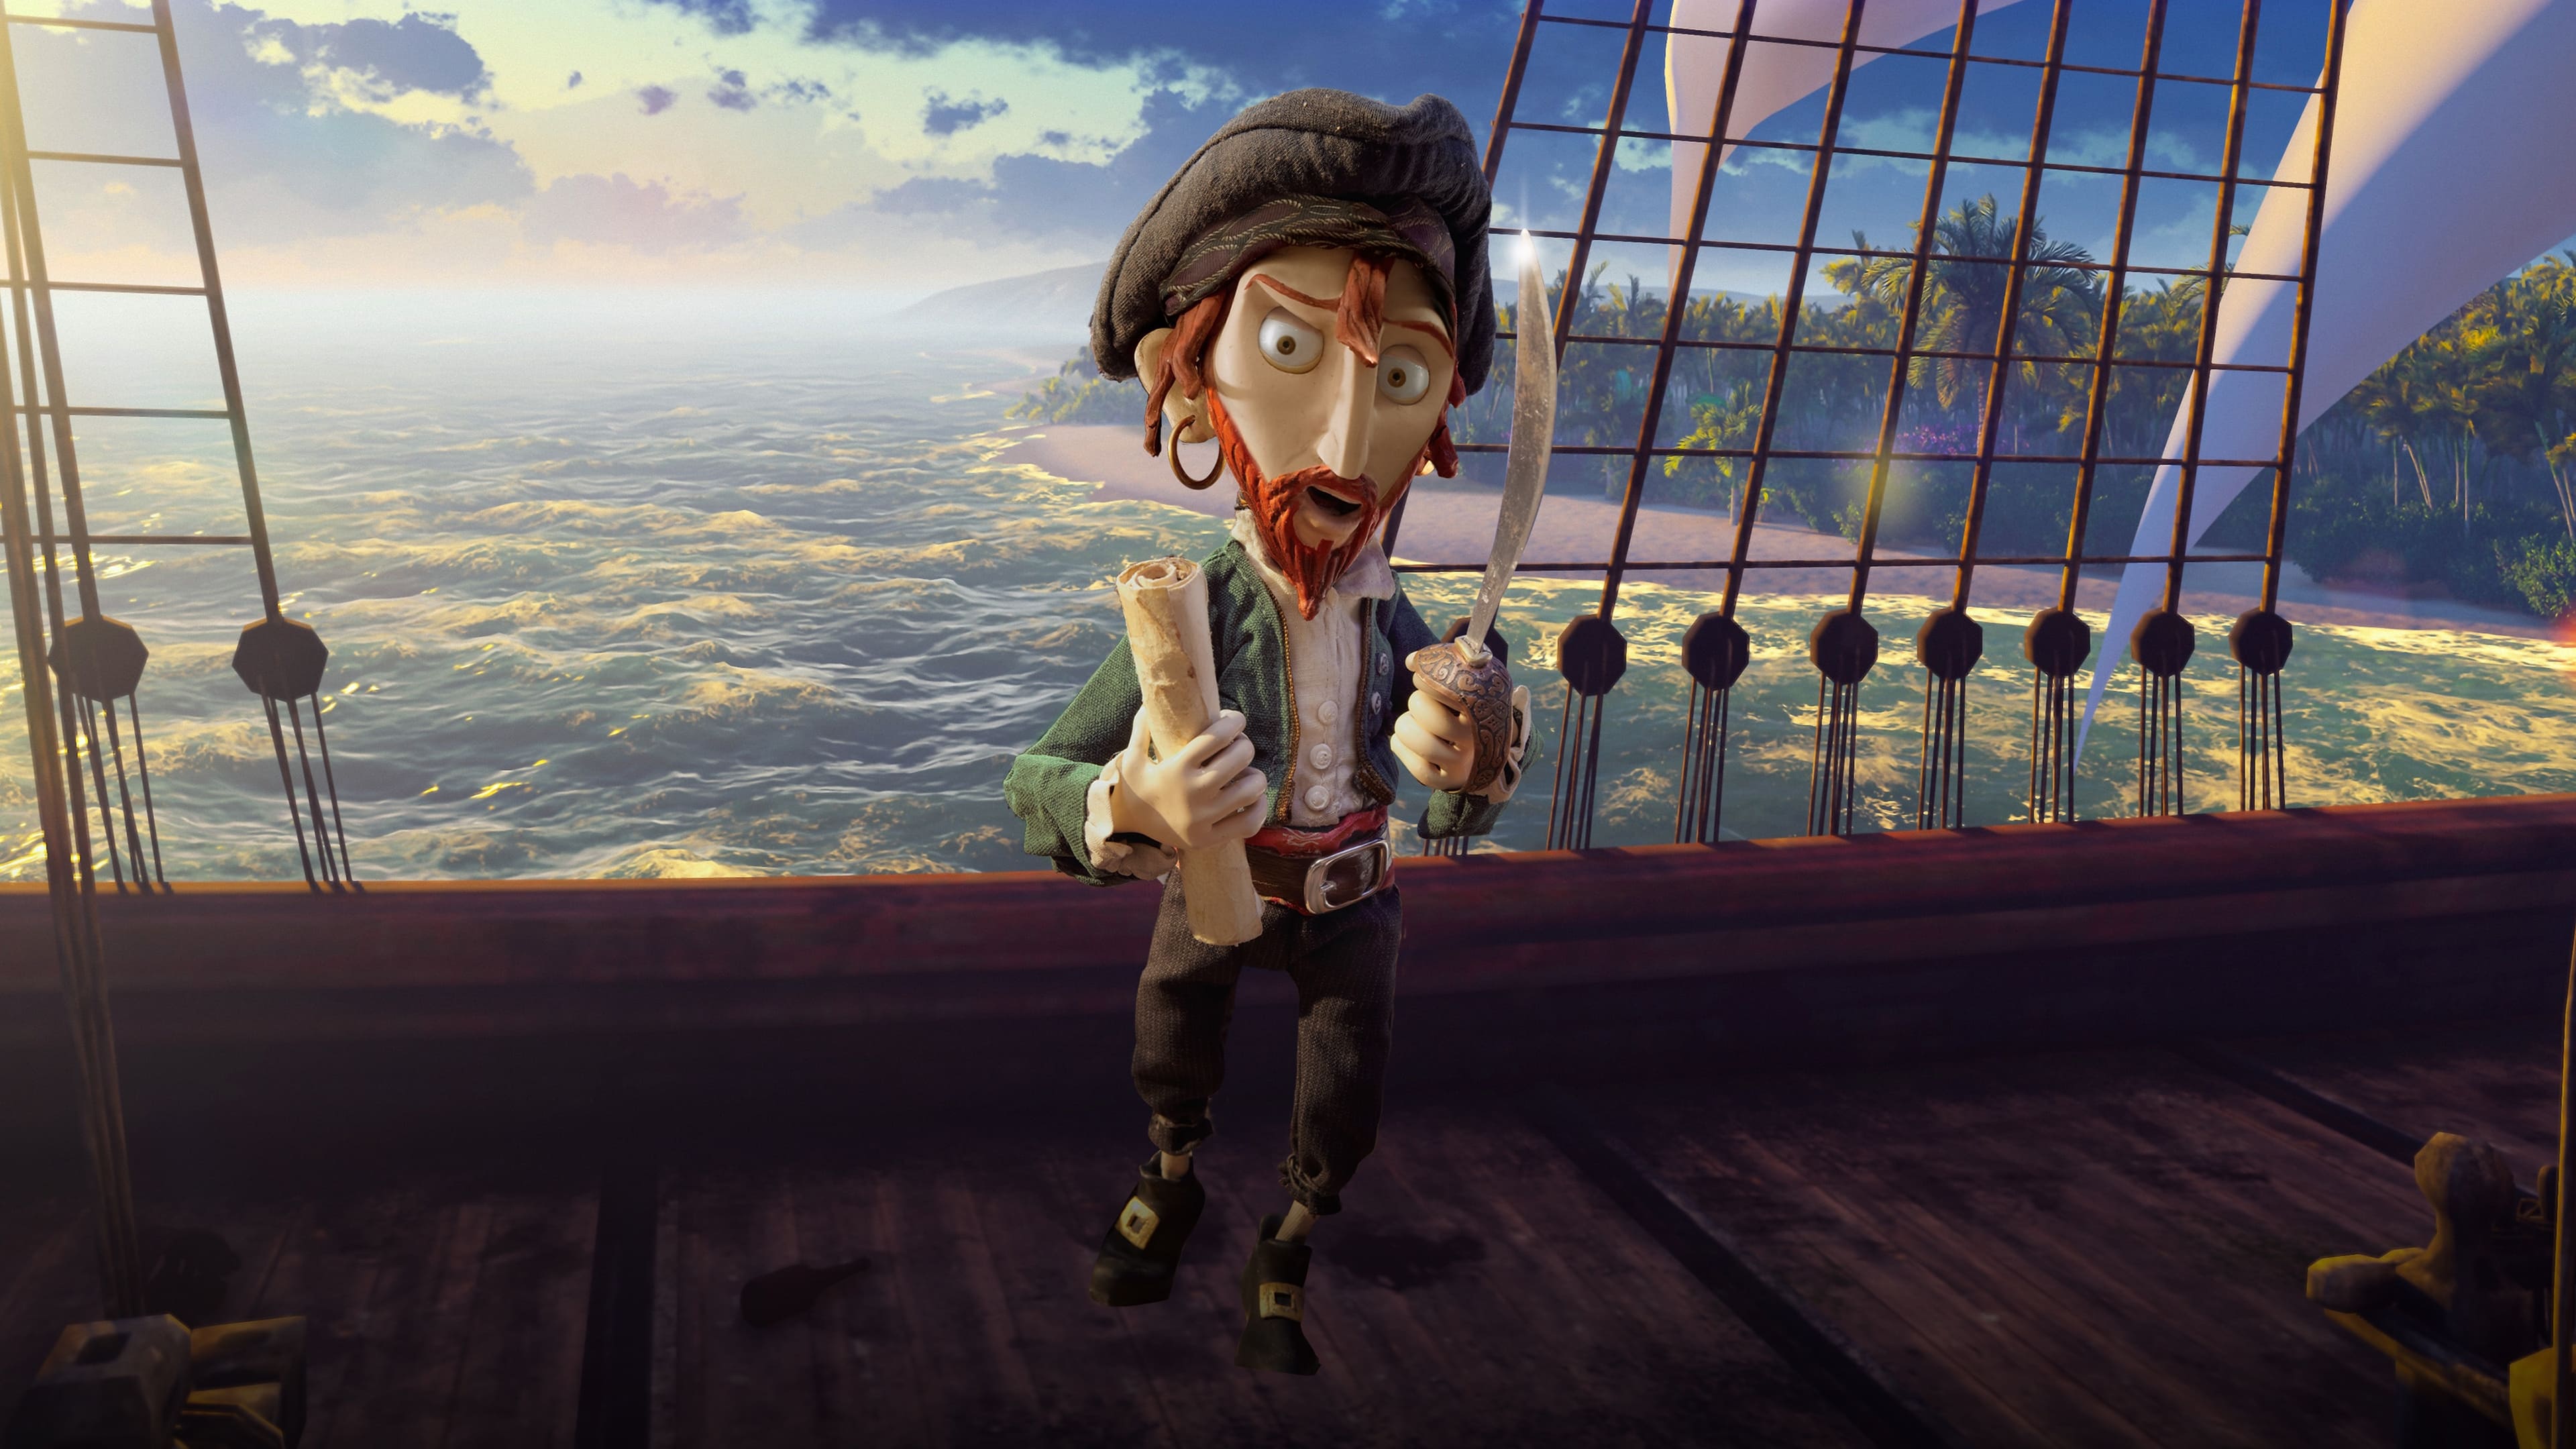 Selkirk, el verdadero Robinson Crusoe